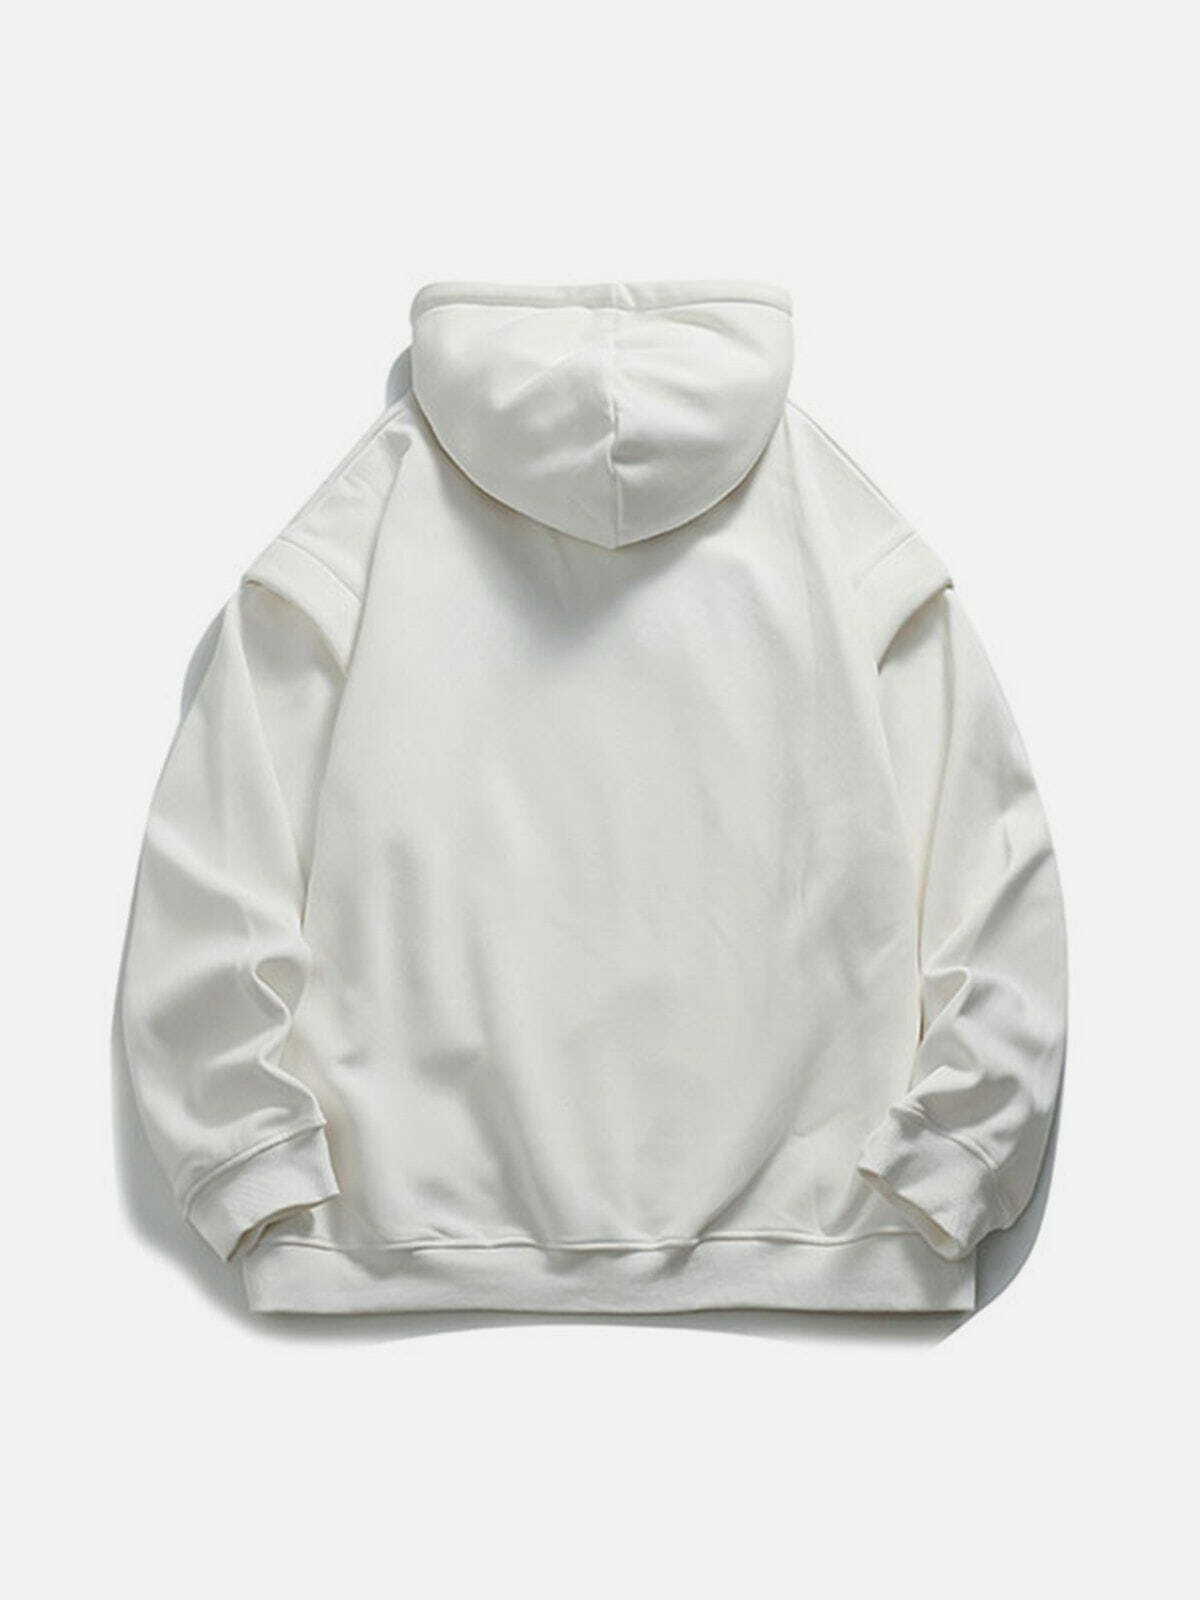 unique 'underock' hoodie edgy streetwear essential 2151